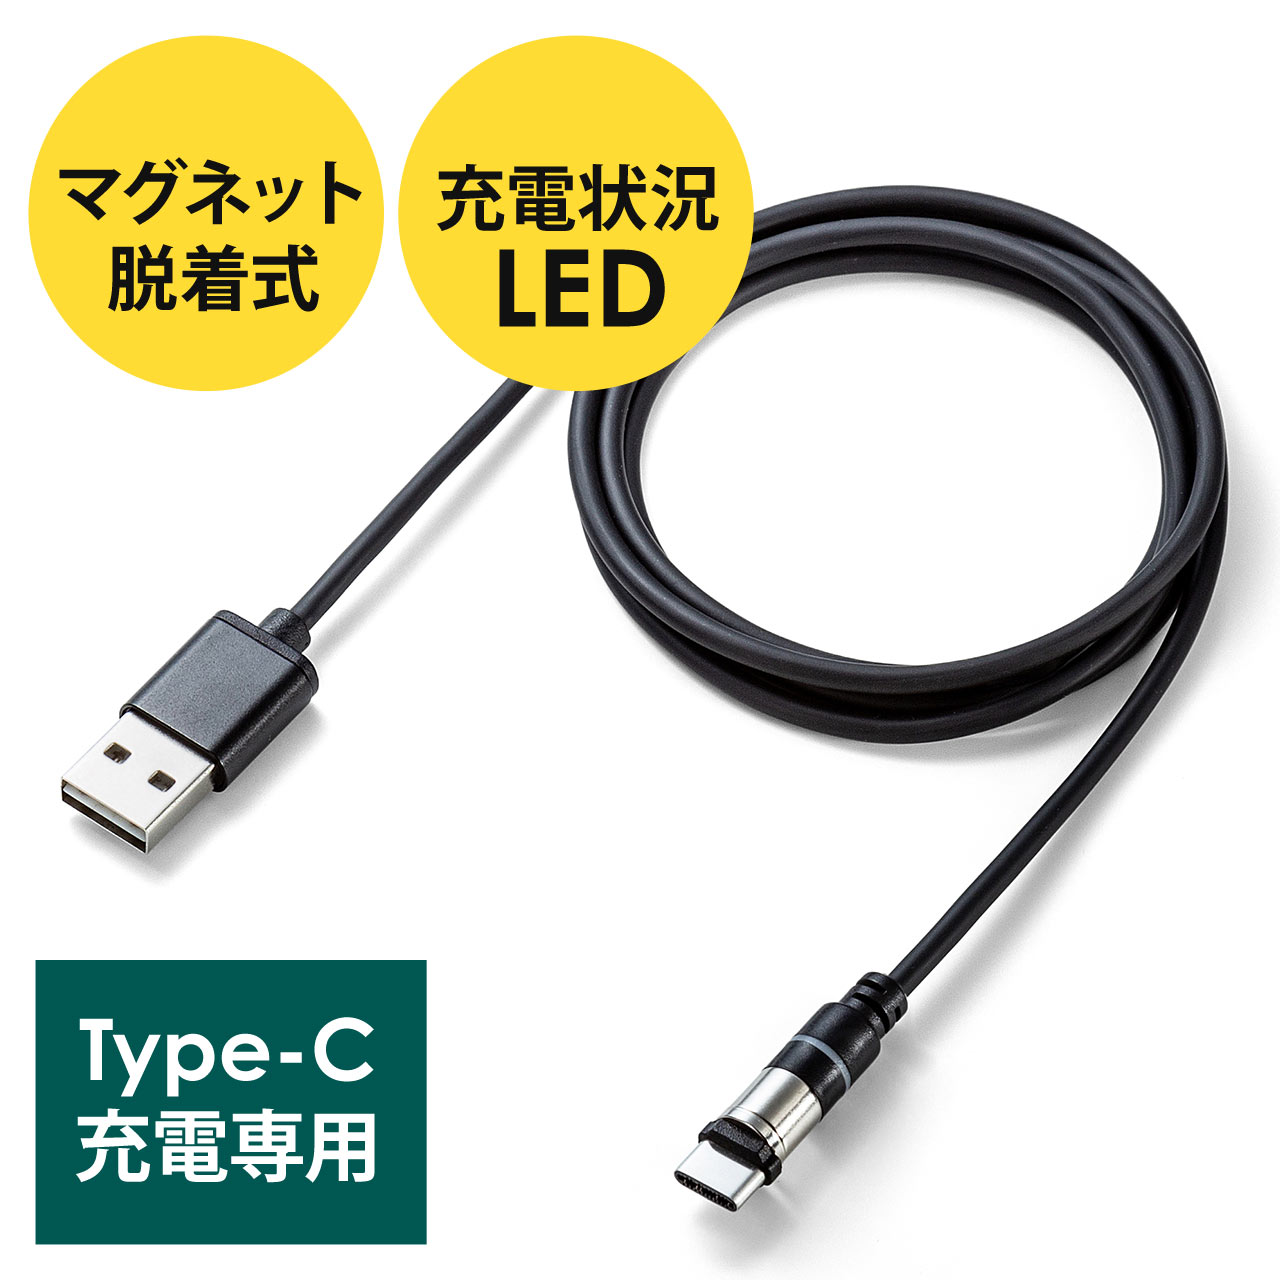 Type-C イヤホン変換ケーブル タイプC 音楽・充電 USB C アナログ